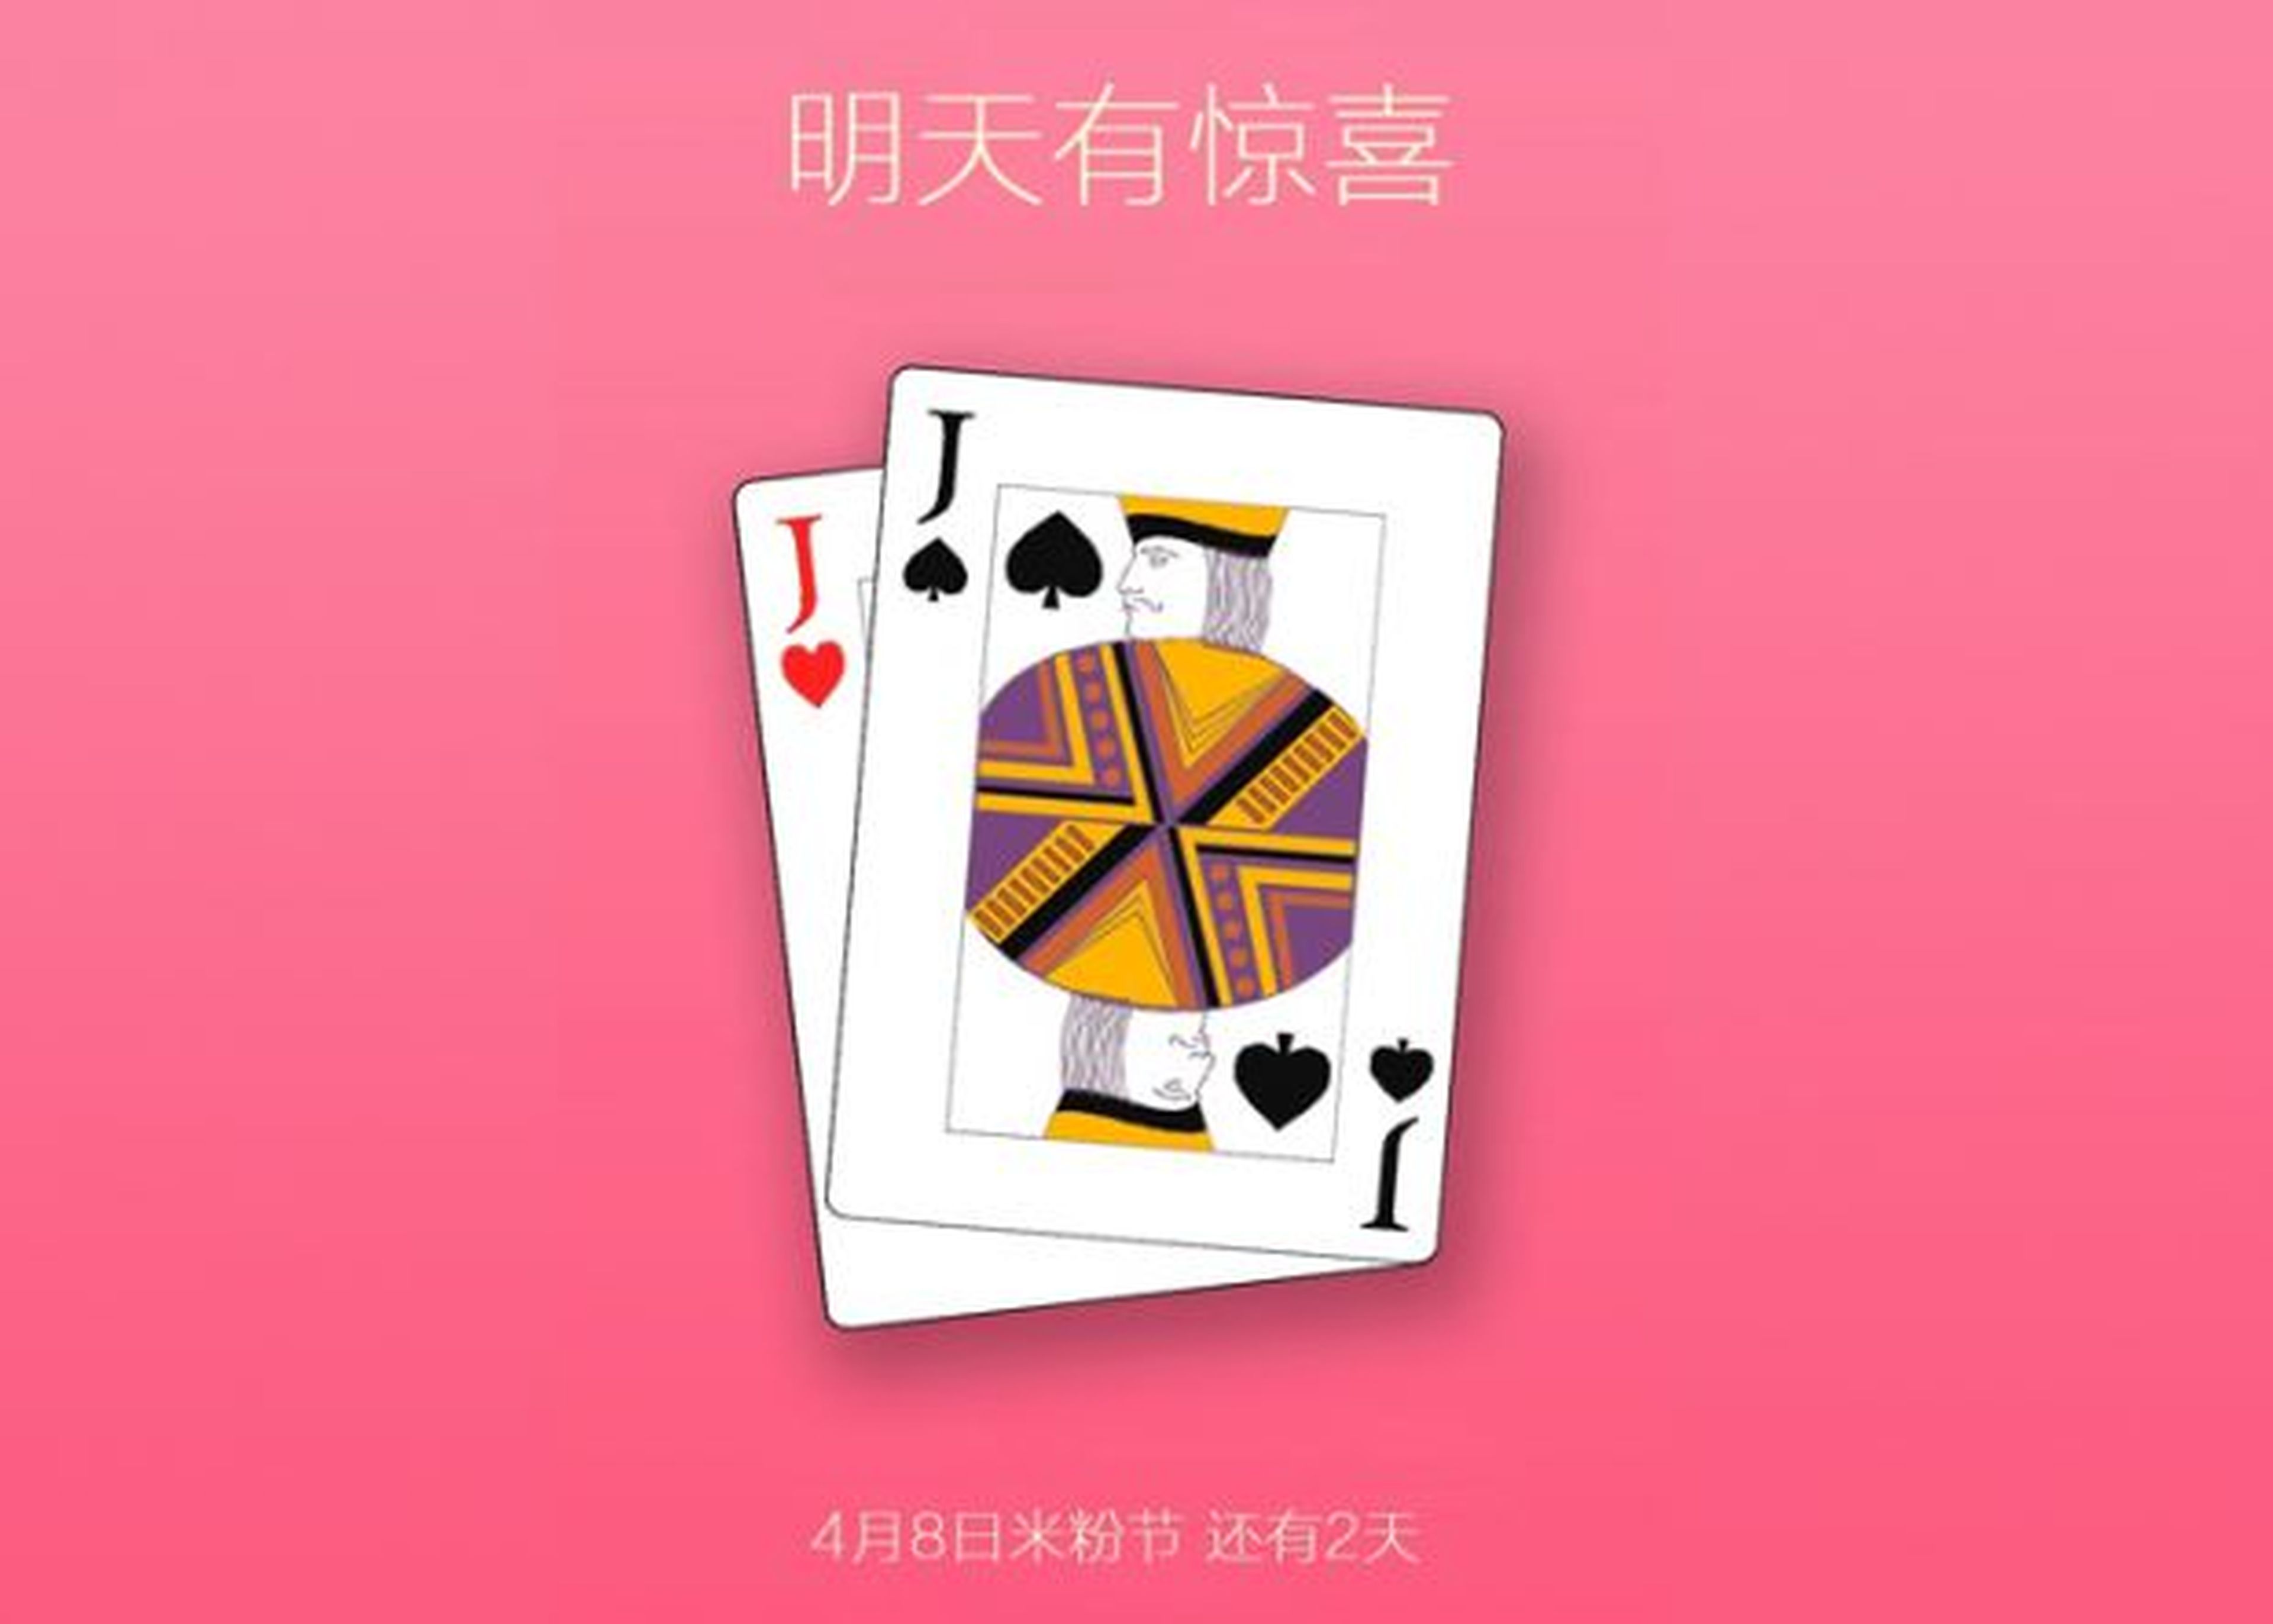 Xiaomi podría presentar Mi Pad 2 el 8 de abril